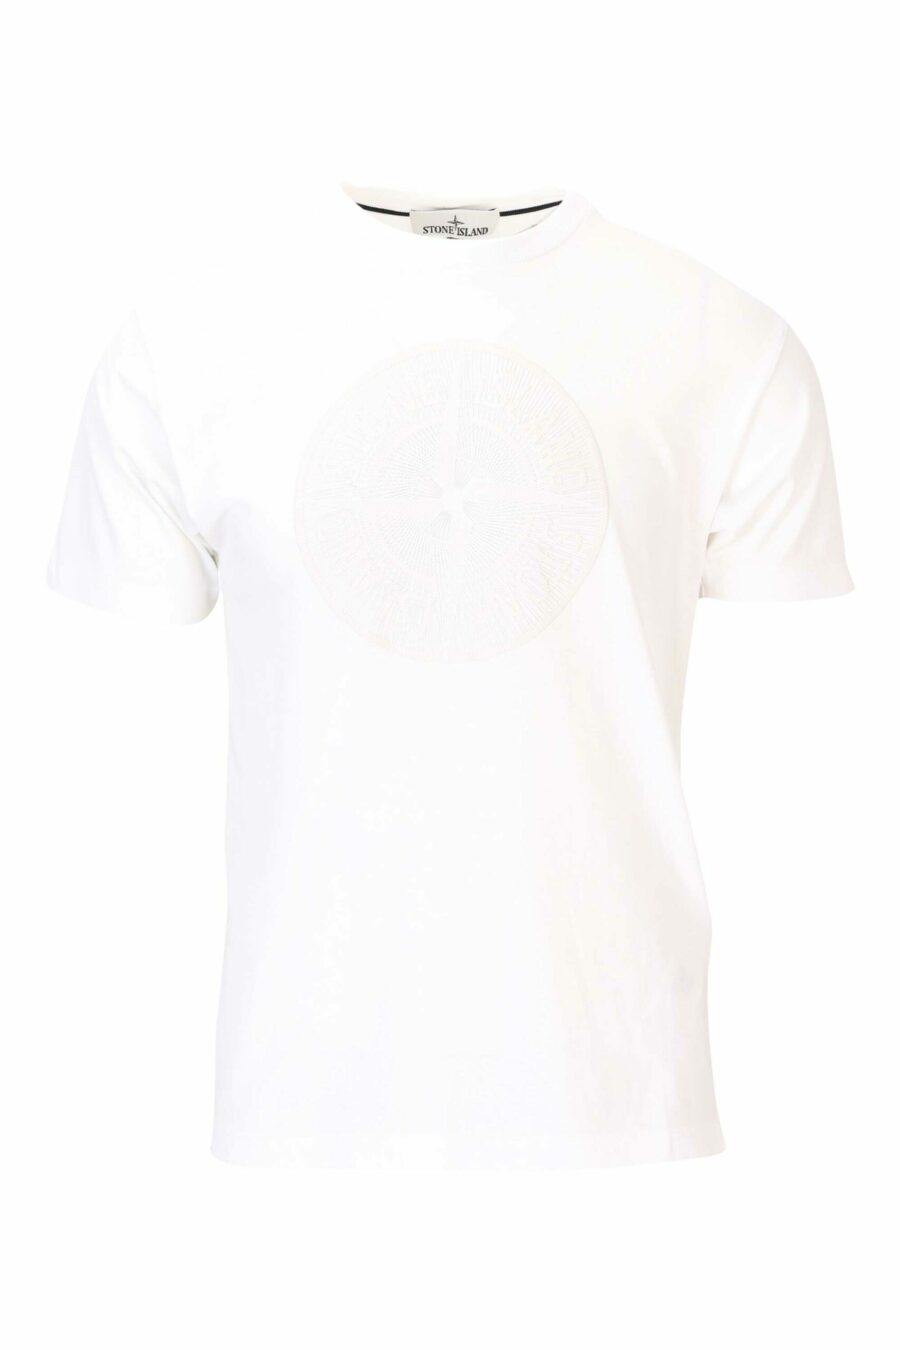 Weißes T-Shirt mit rundem Maxilogo auf der Vorderseite - 8052572742361 skaliert